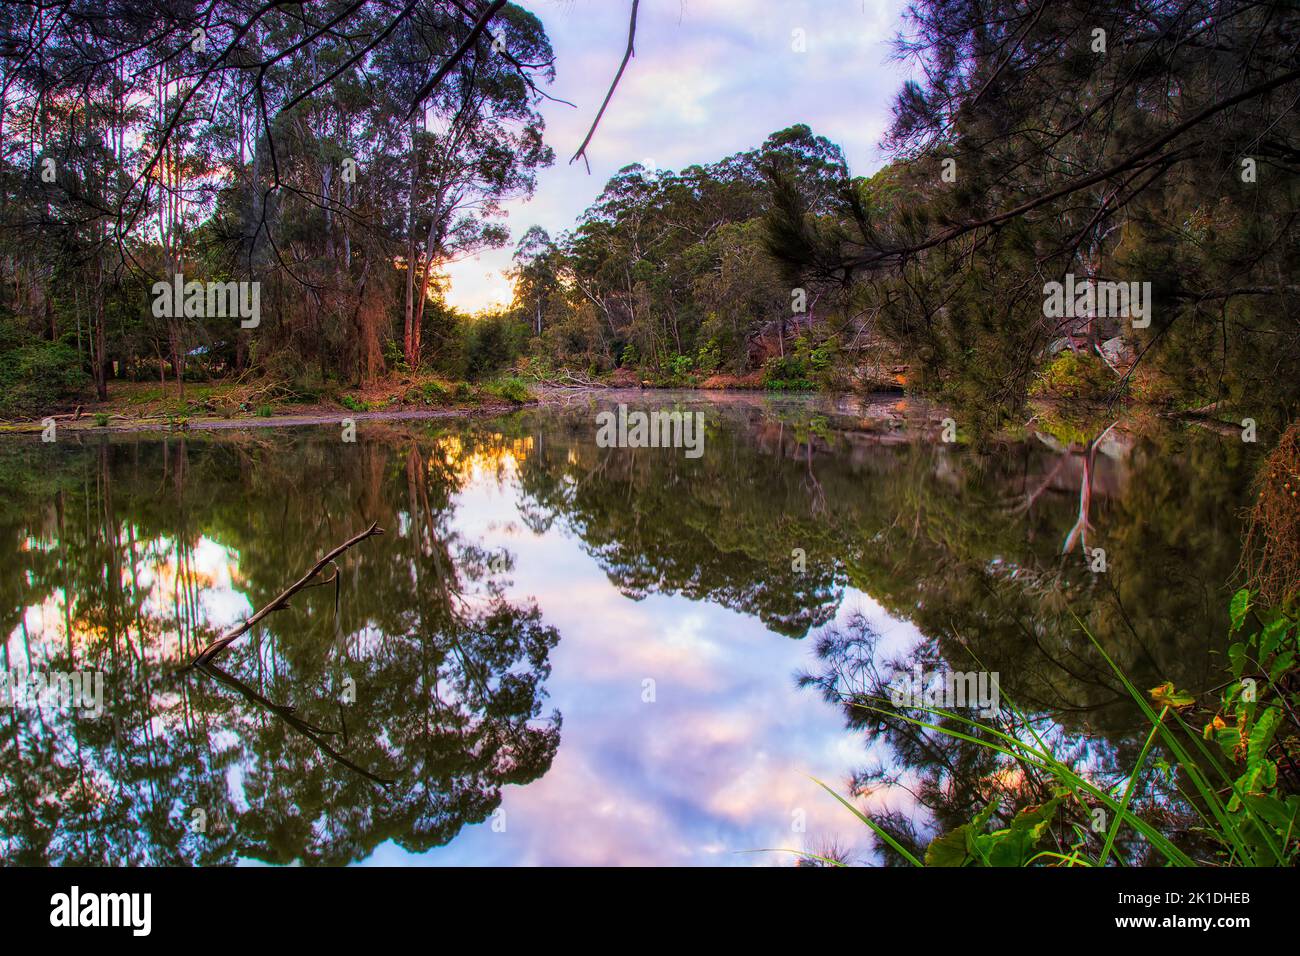 Slow Lazy Lane Cove fiume nel Parco Nazionale della città di Sydney in Australia - Sunrise paesaggio. Foto Stock